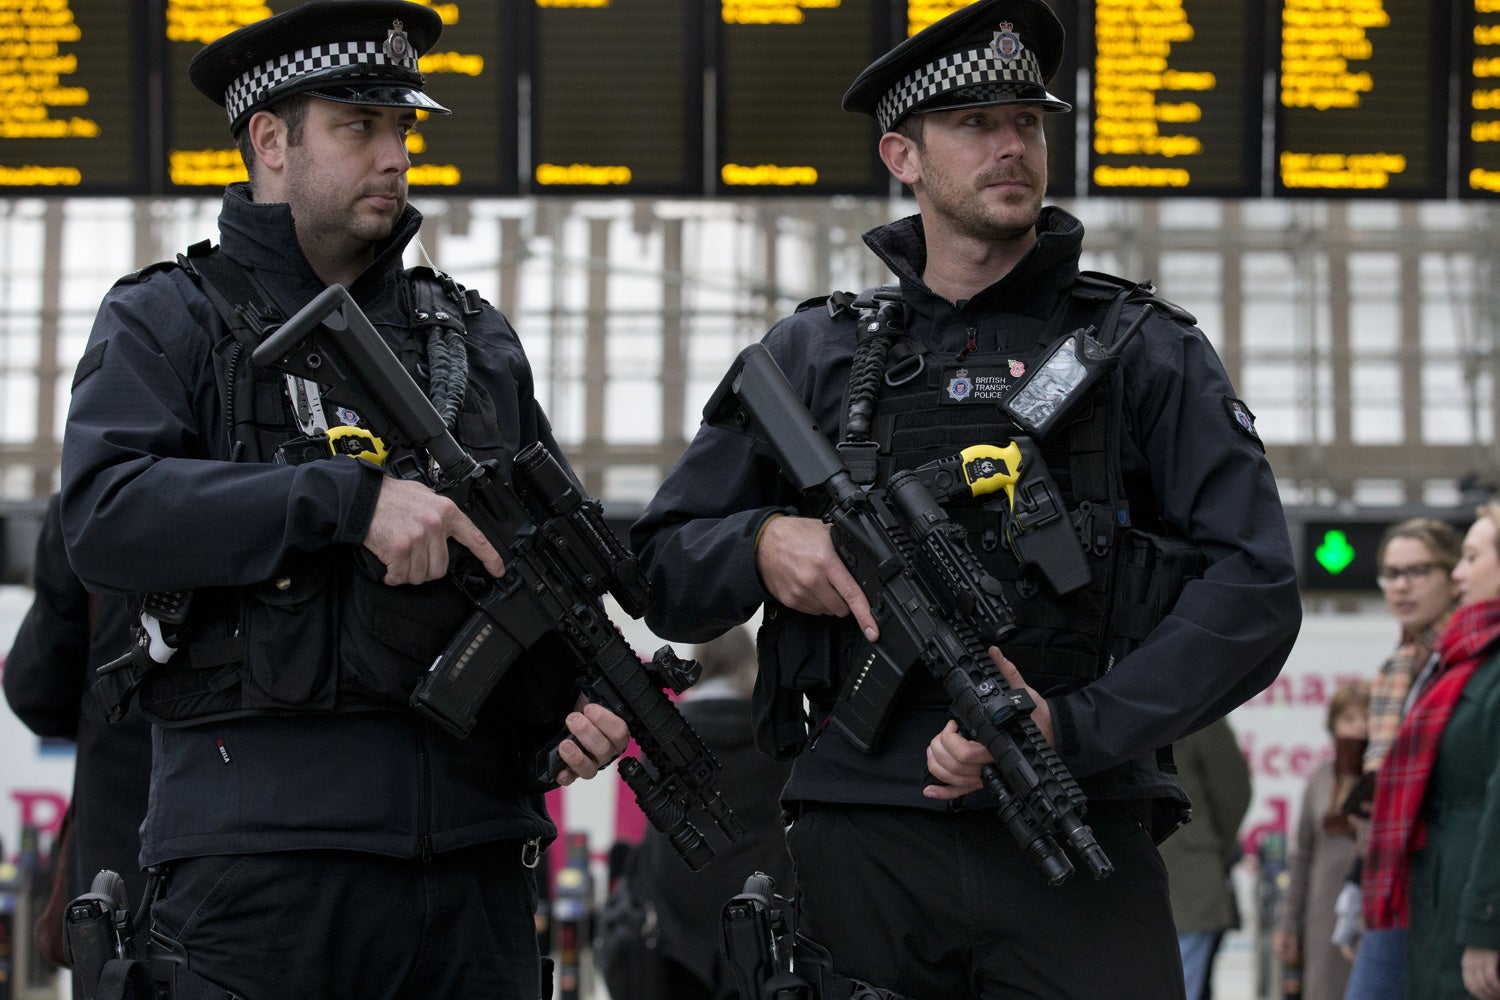 مكافحة الإرهاب - تراجع الاعتقالات بشبهة الإرهاب في بريطانيا  